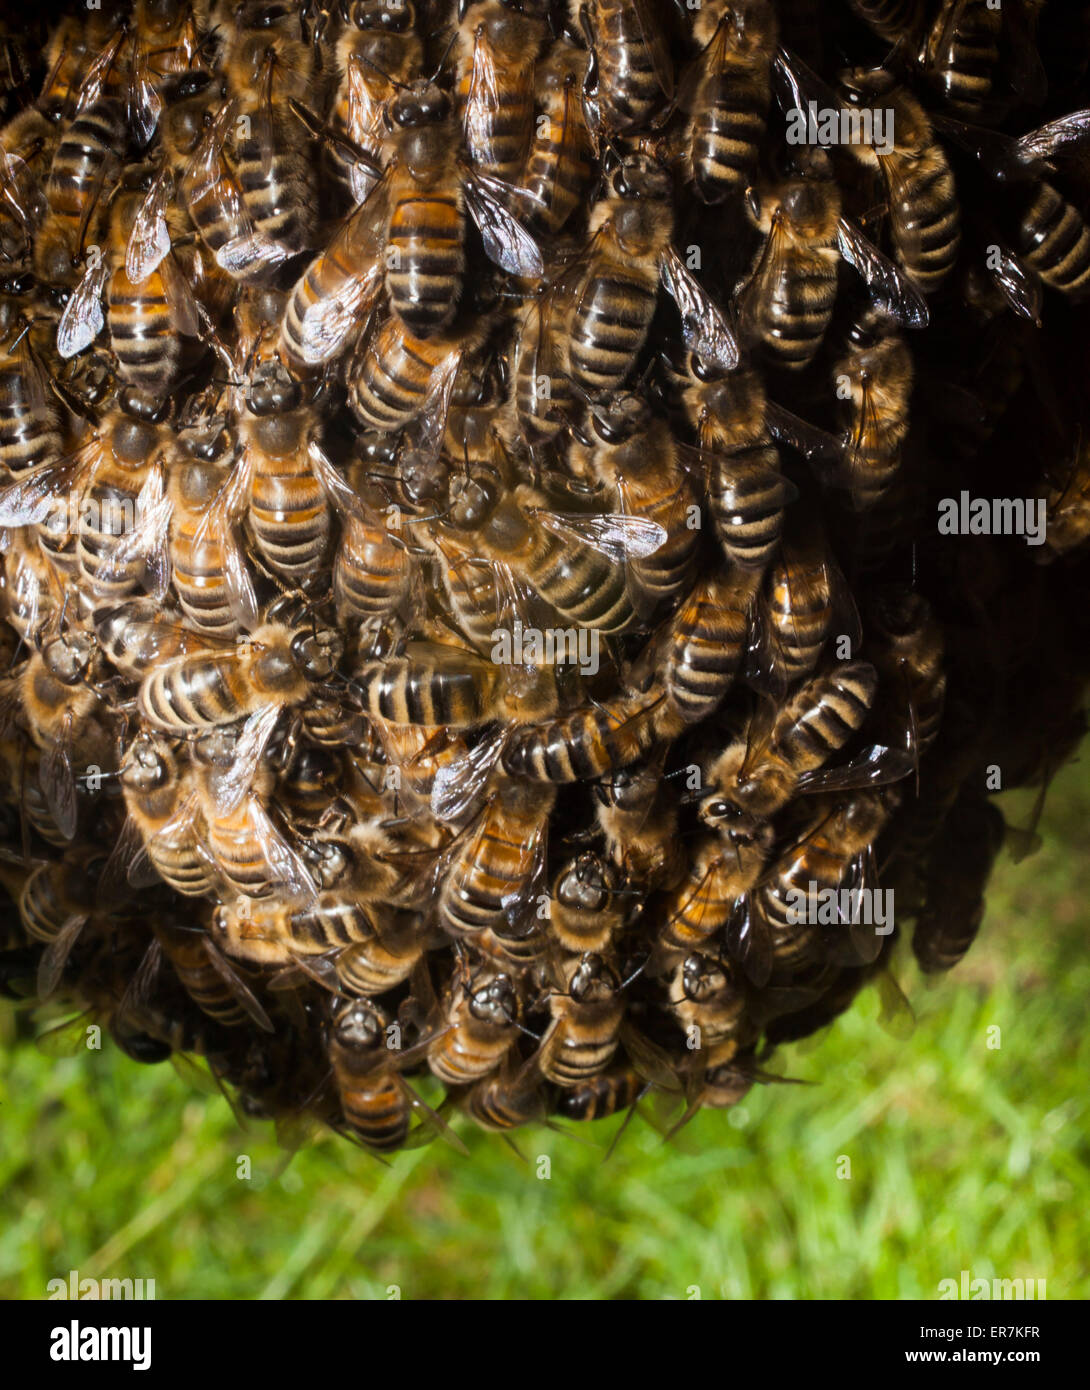 Un essaim d'abeilles à miel,qui ont quitté la colonie d'origine, de rassembler autour de leur nouvelle reine. Plus tard, ils vont créer une nouvelle colonie. Banque D'Images